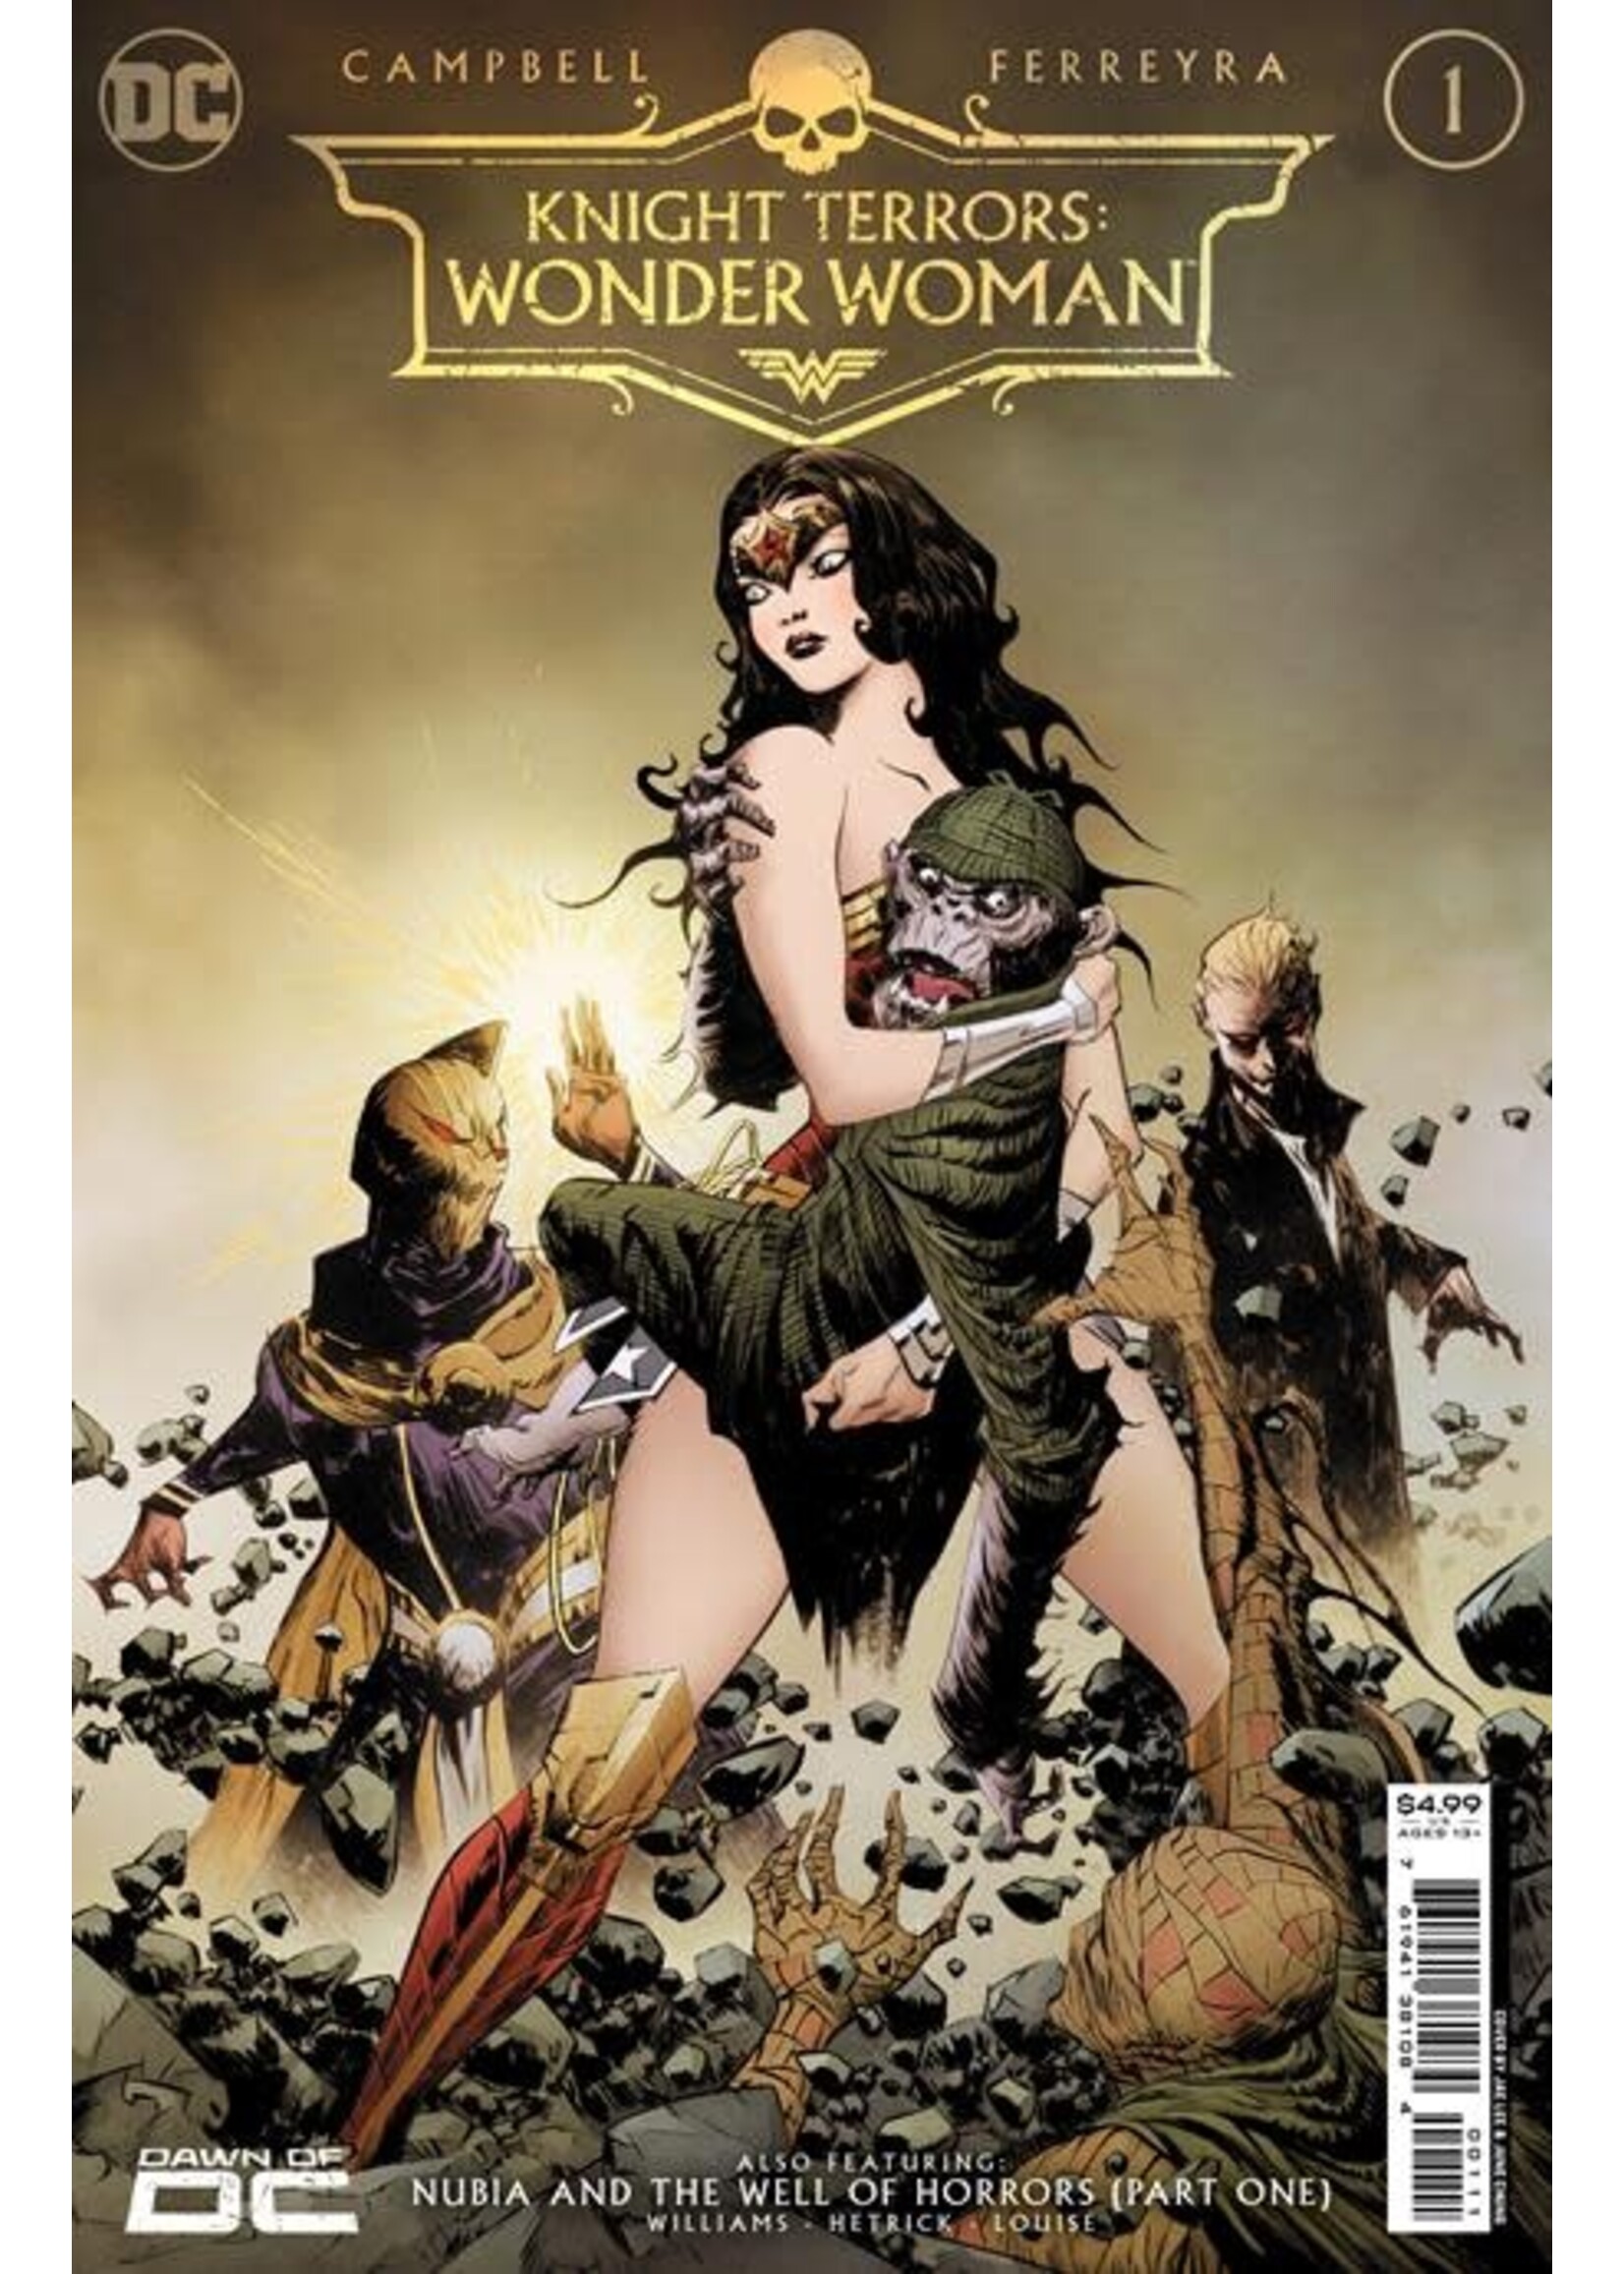 DC COMICS KNIGHT TERRORS WONDER WOMAN #1